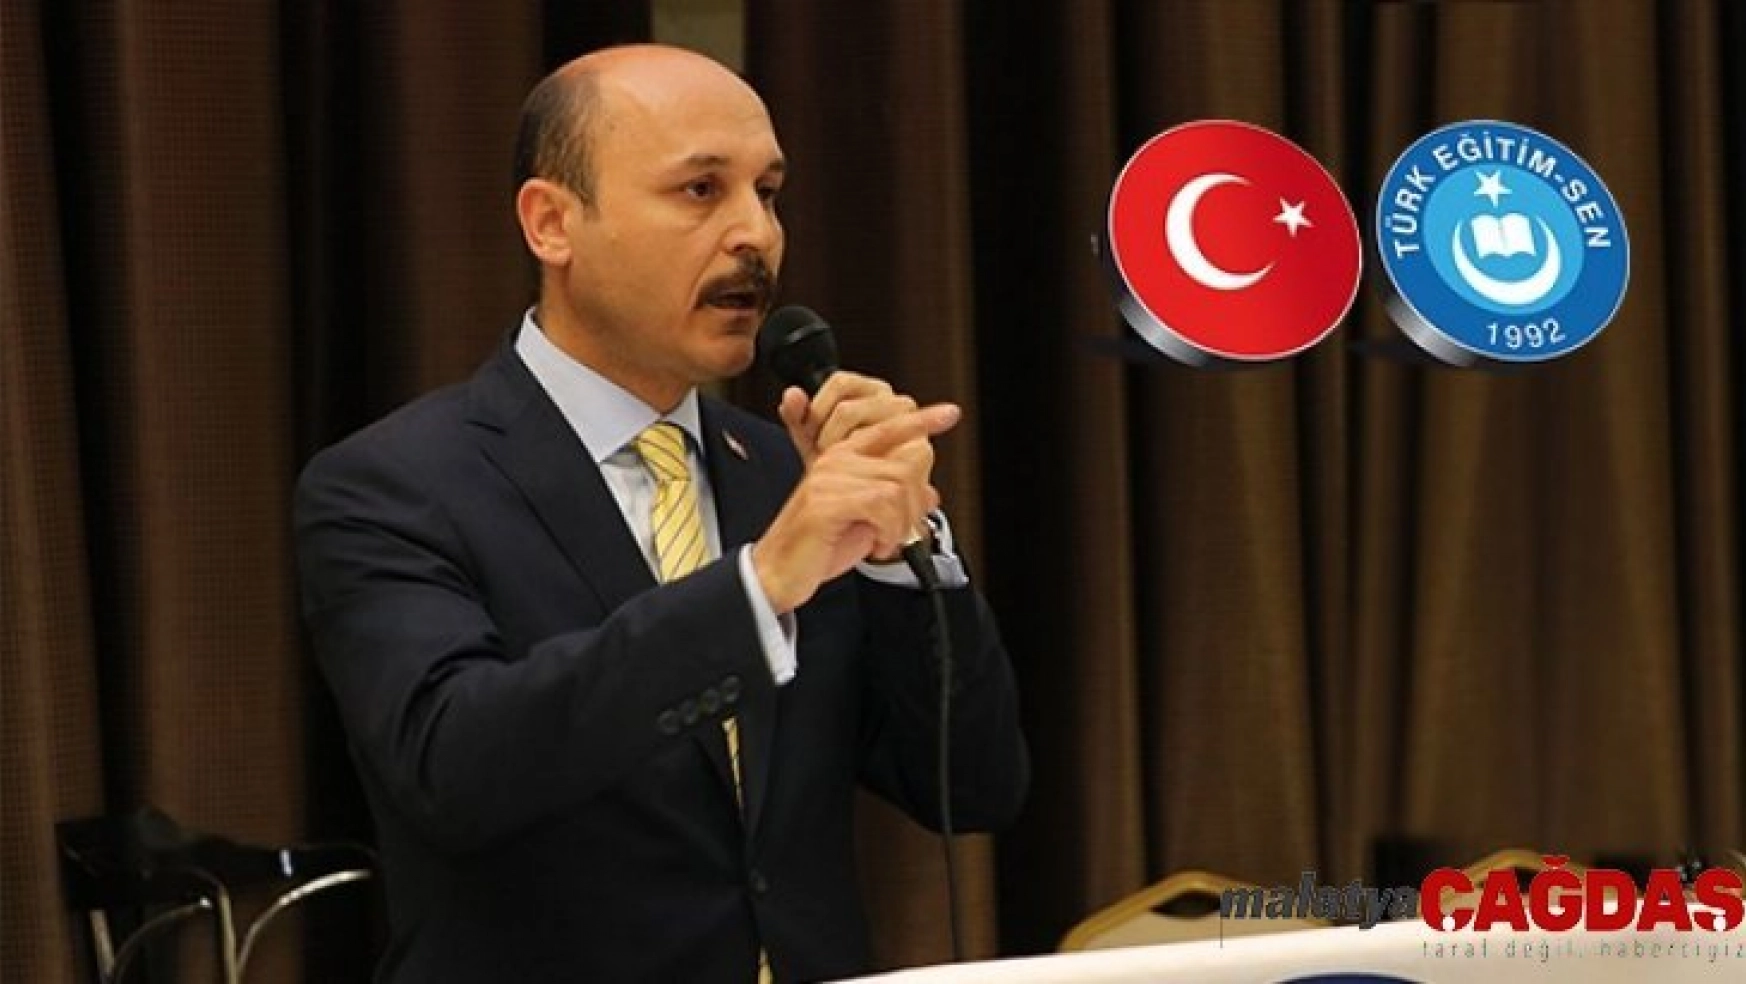 Türk Eğitim Sen Genel Başkanı Geylan: '82 milyonun yüreği kahraman Mehmetçiğimiz için çarpmaktadır'